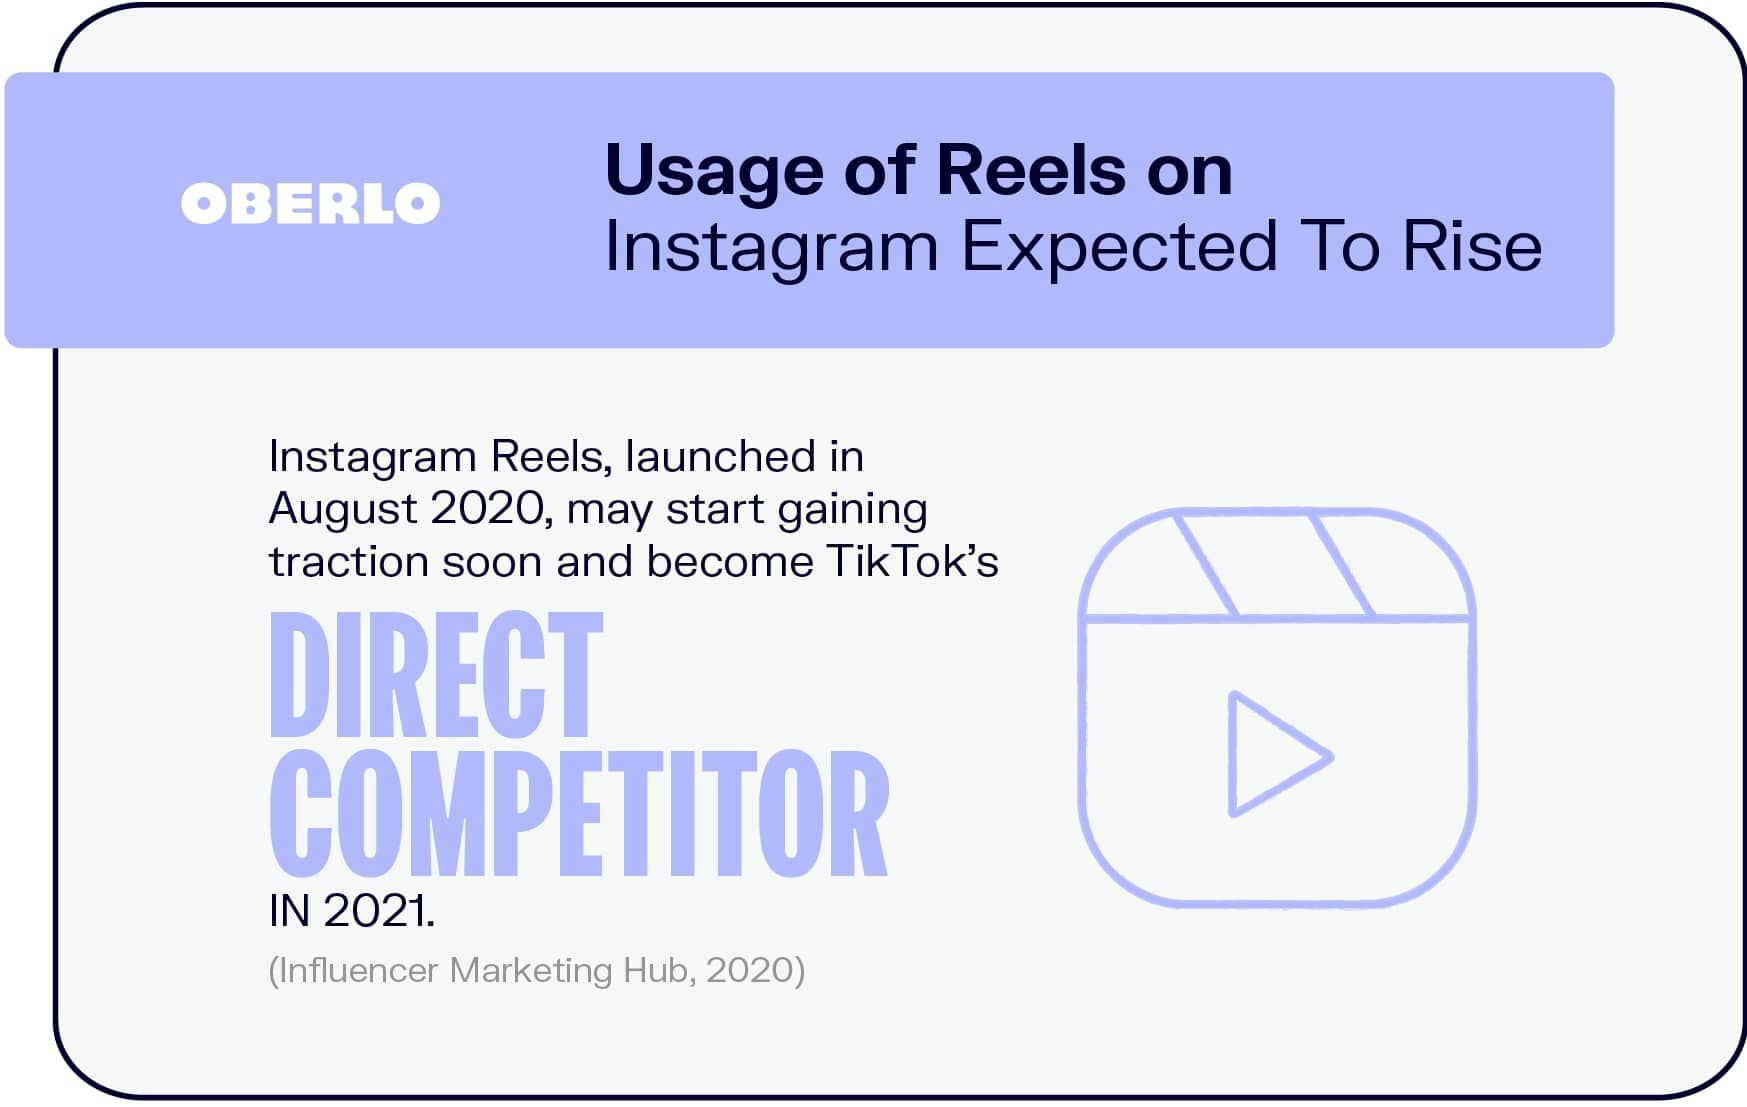 Usage of Reels on Instagram